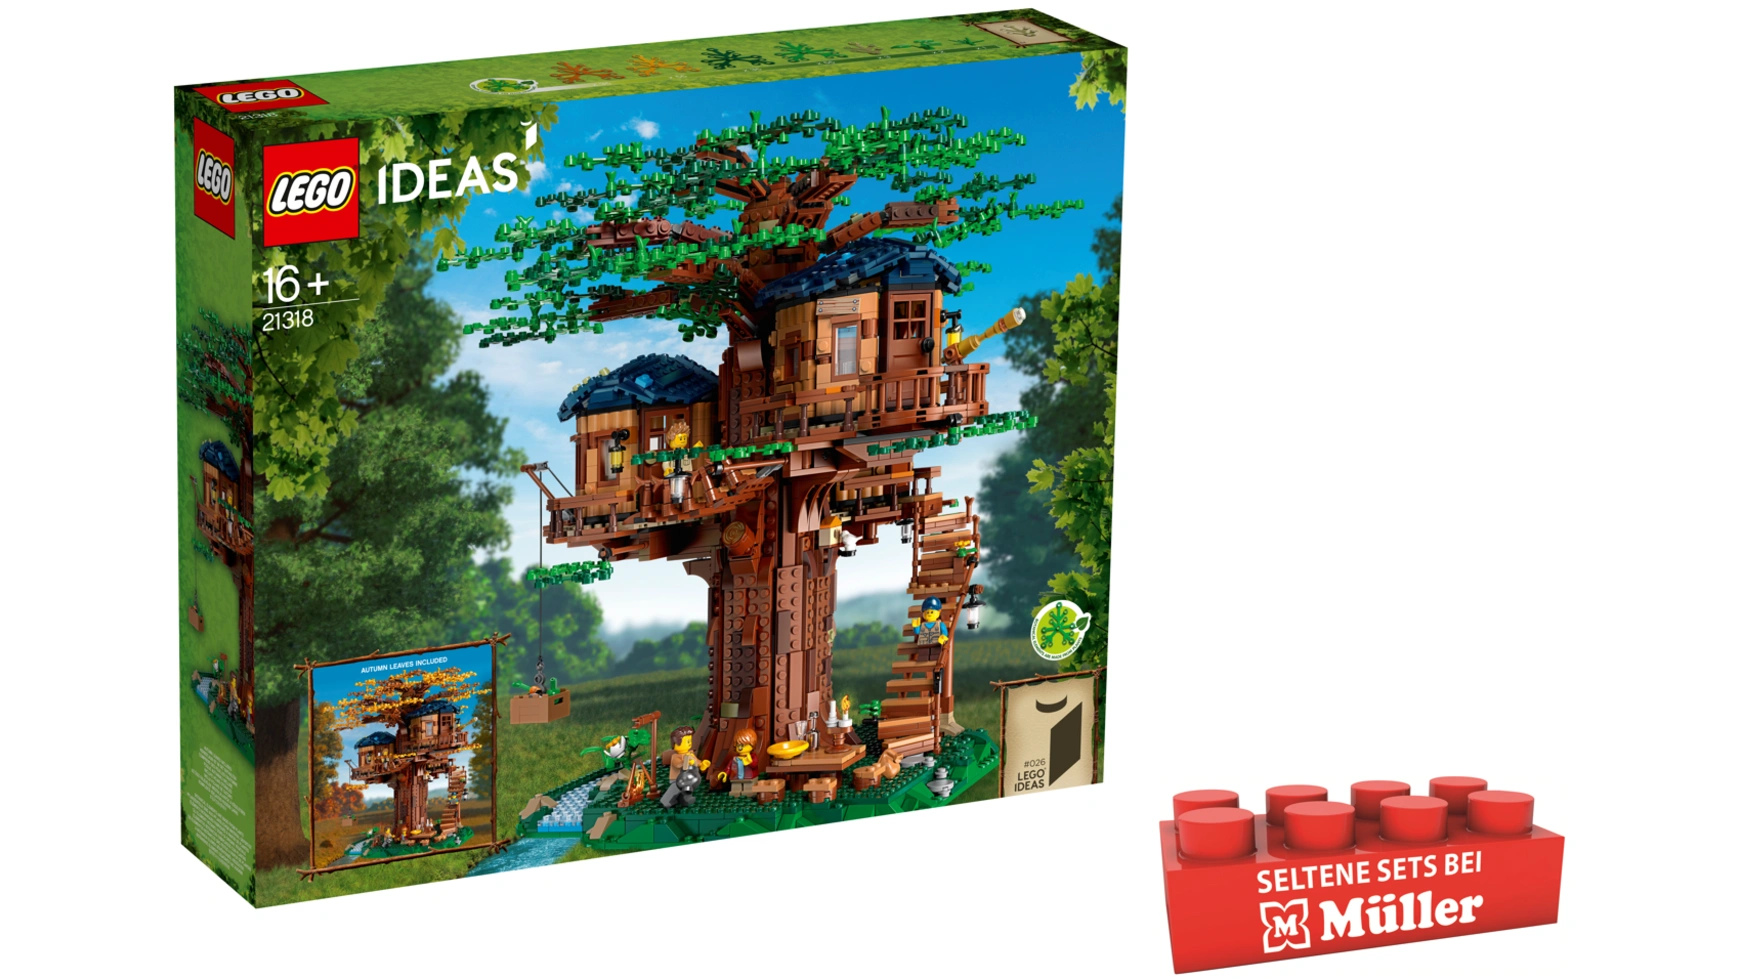 Lego Ideas Набор моделей Дом на дереве с домиками и минифигурками